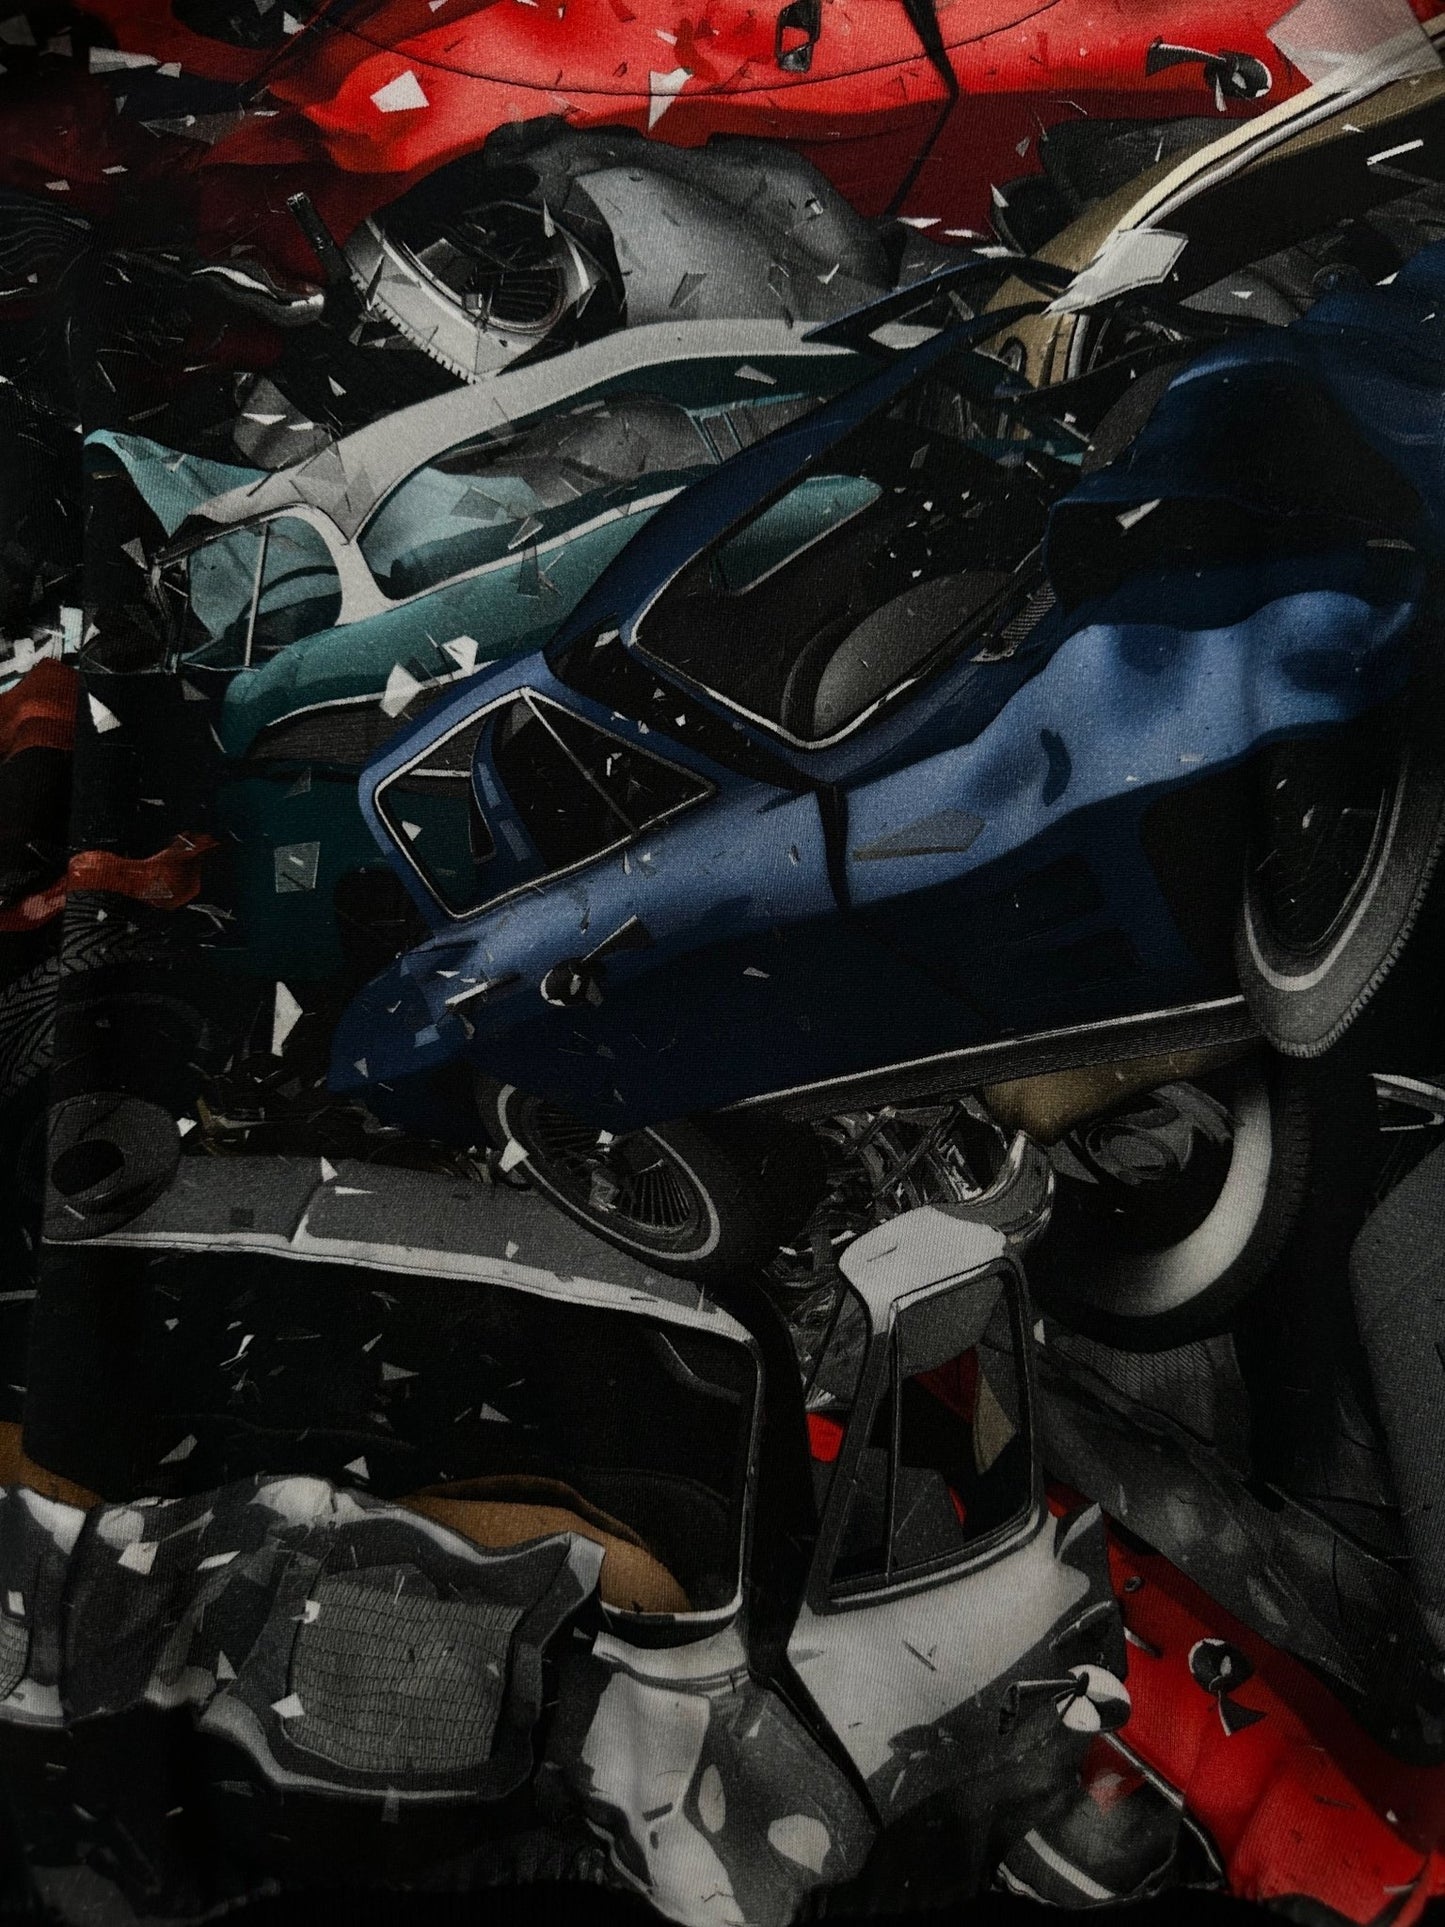 CHRITSTOPHER KANE crashed cars hoodie - six__pistols designer fashion items